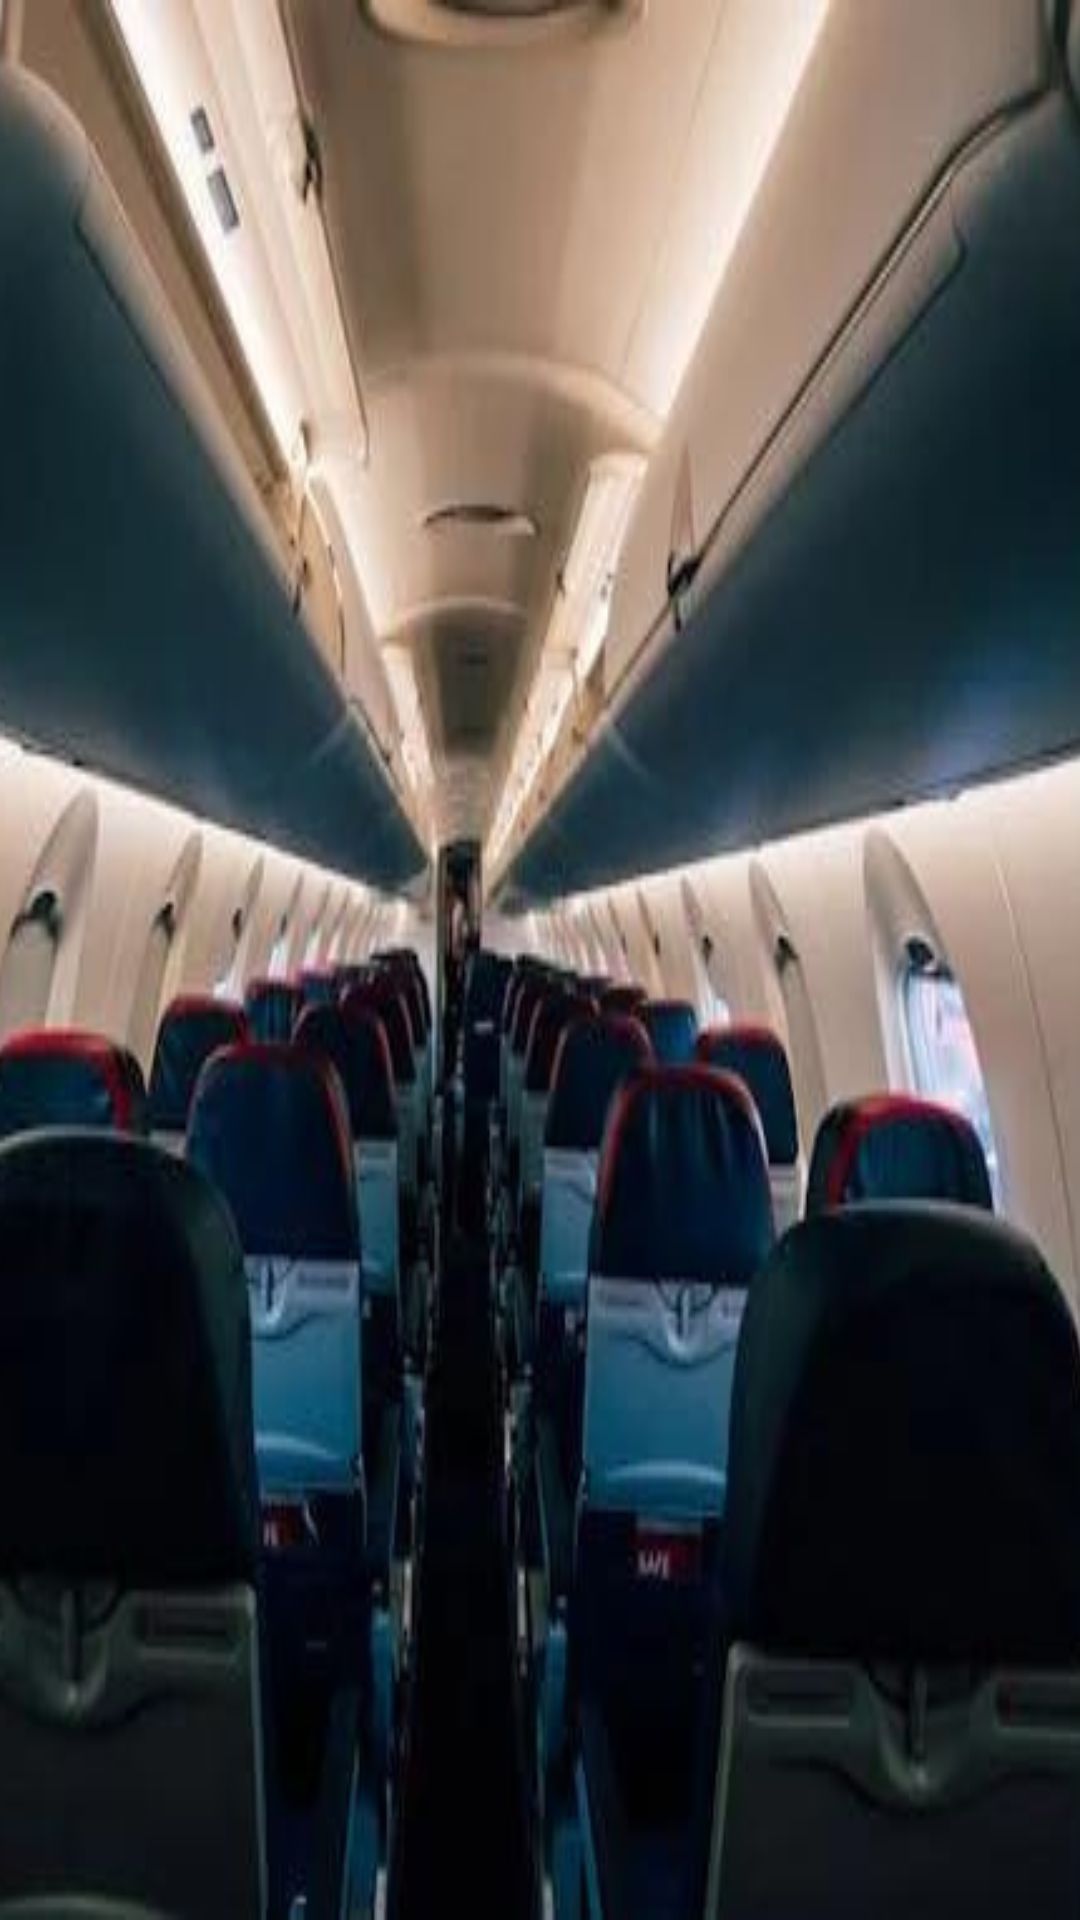 कुछ हवाई जहाजों में 13 नंबर की सीट क्यों नहीं होती है?